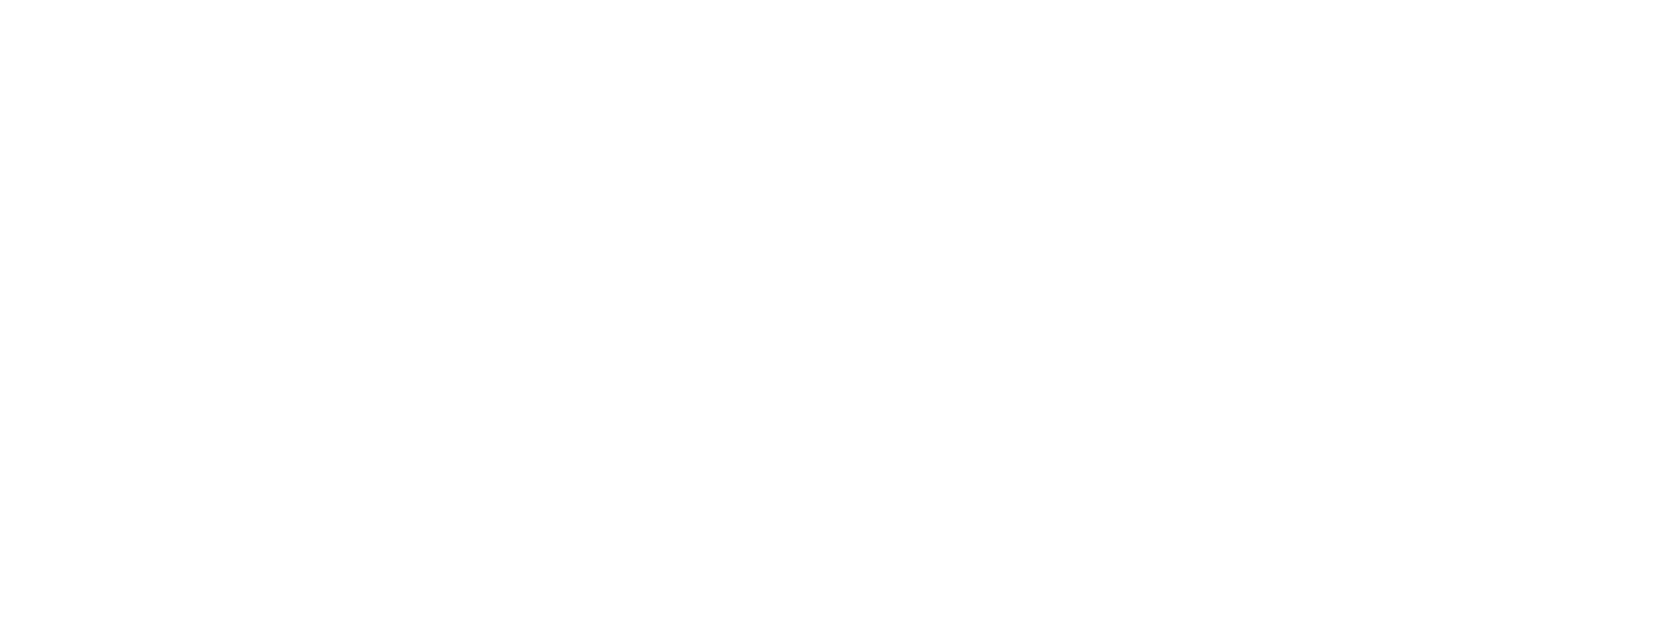 Anglers Inn